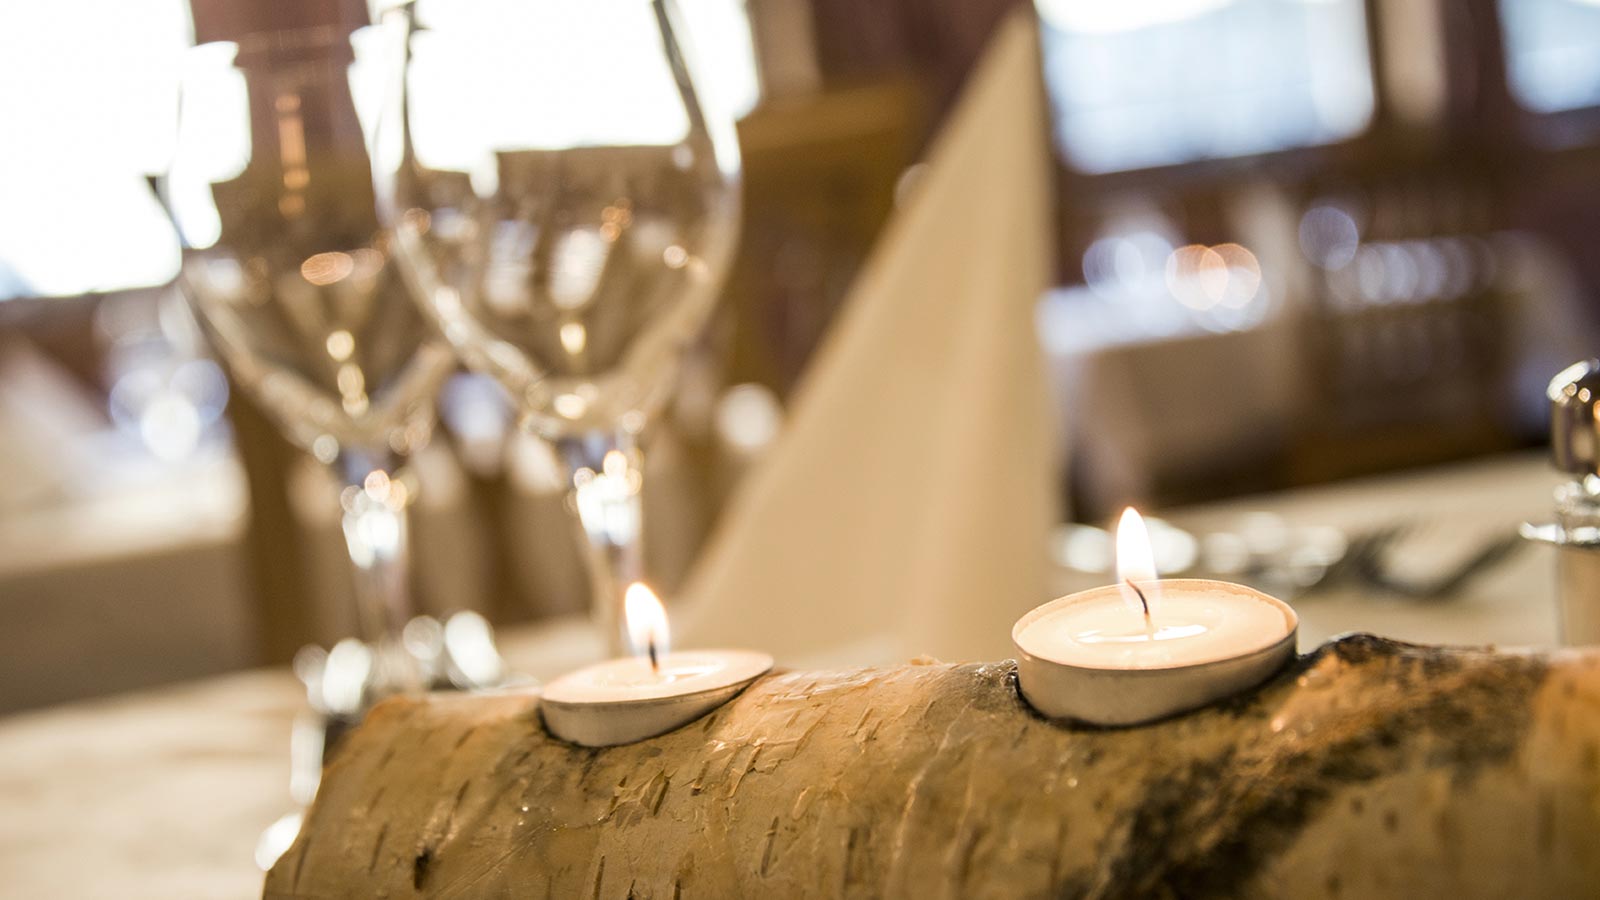 Decorazione da tavola fatta in legno con candele accese e calici di vetro sullo sfondo